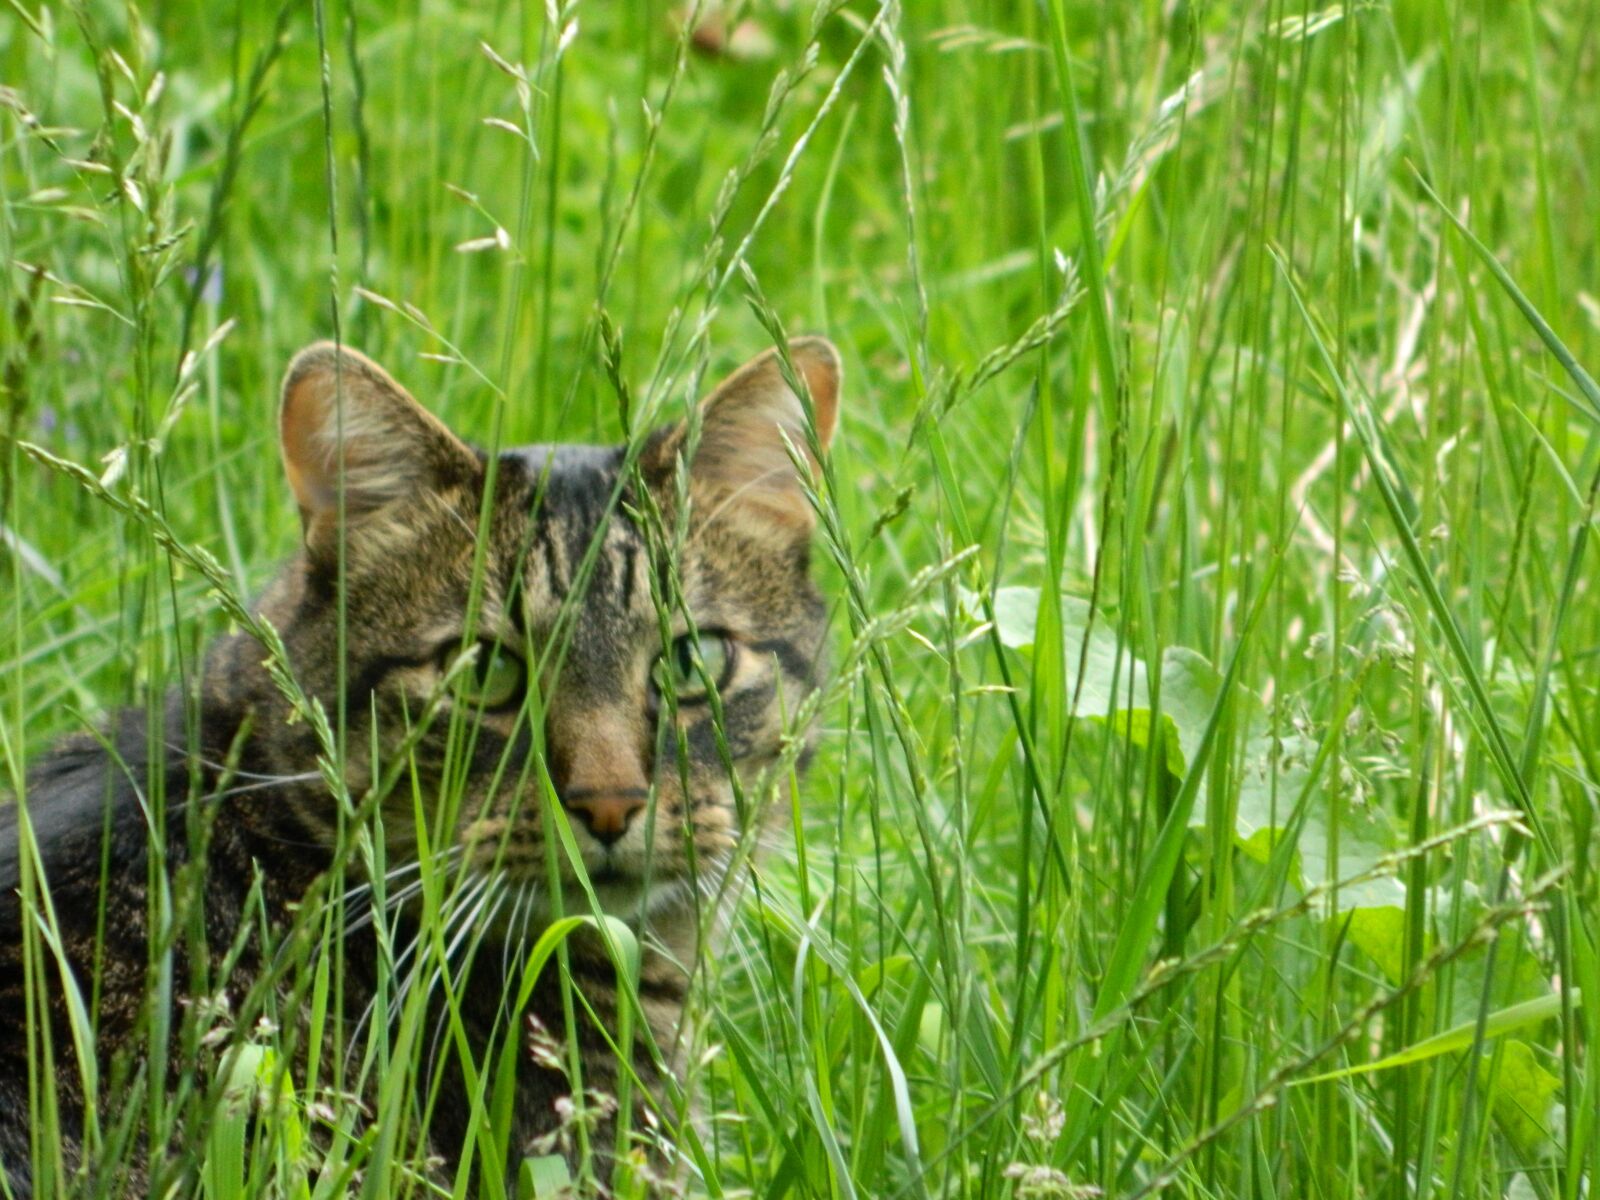 Nikon Coolpix L120 sample photo. Cat, grass, animal photography